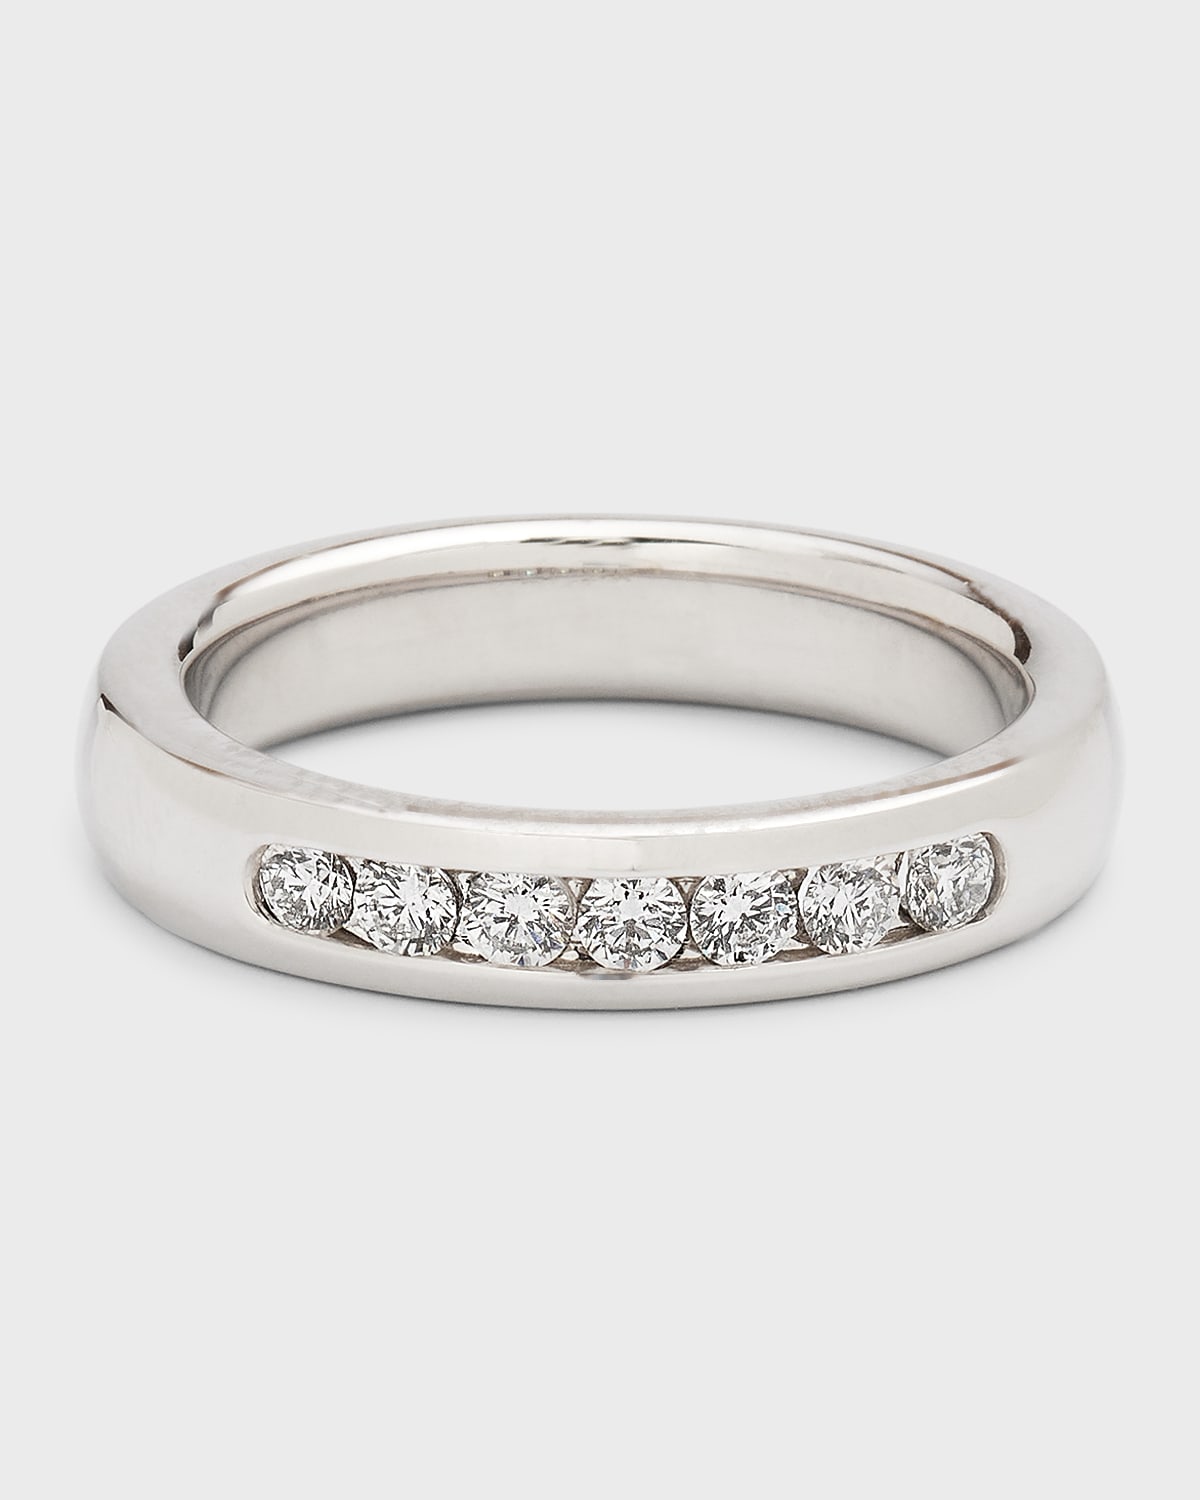 NM Diamond Collection Men's 18k White Gold Round Diamond Ring, Size 10